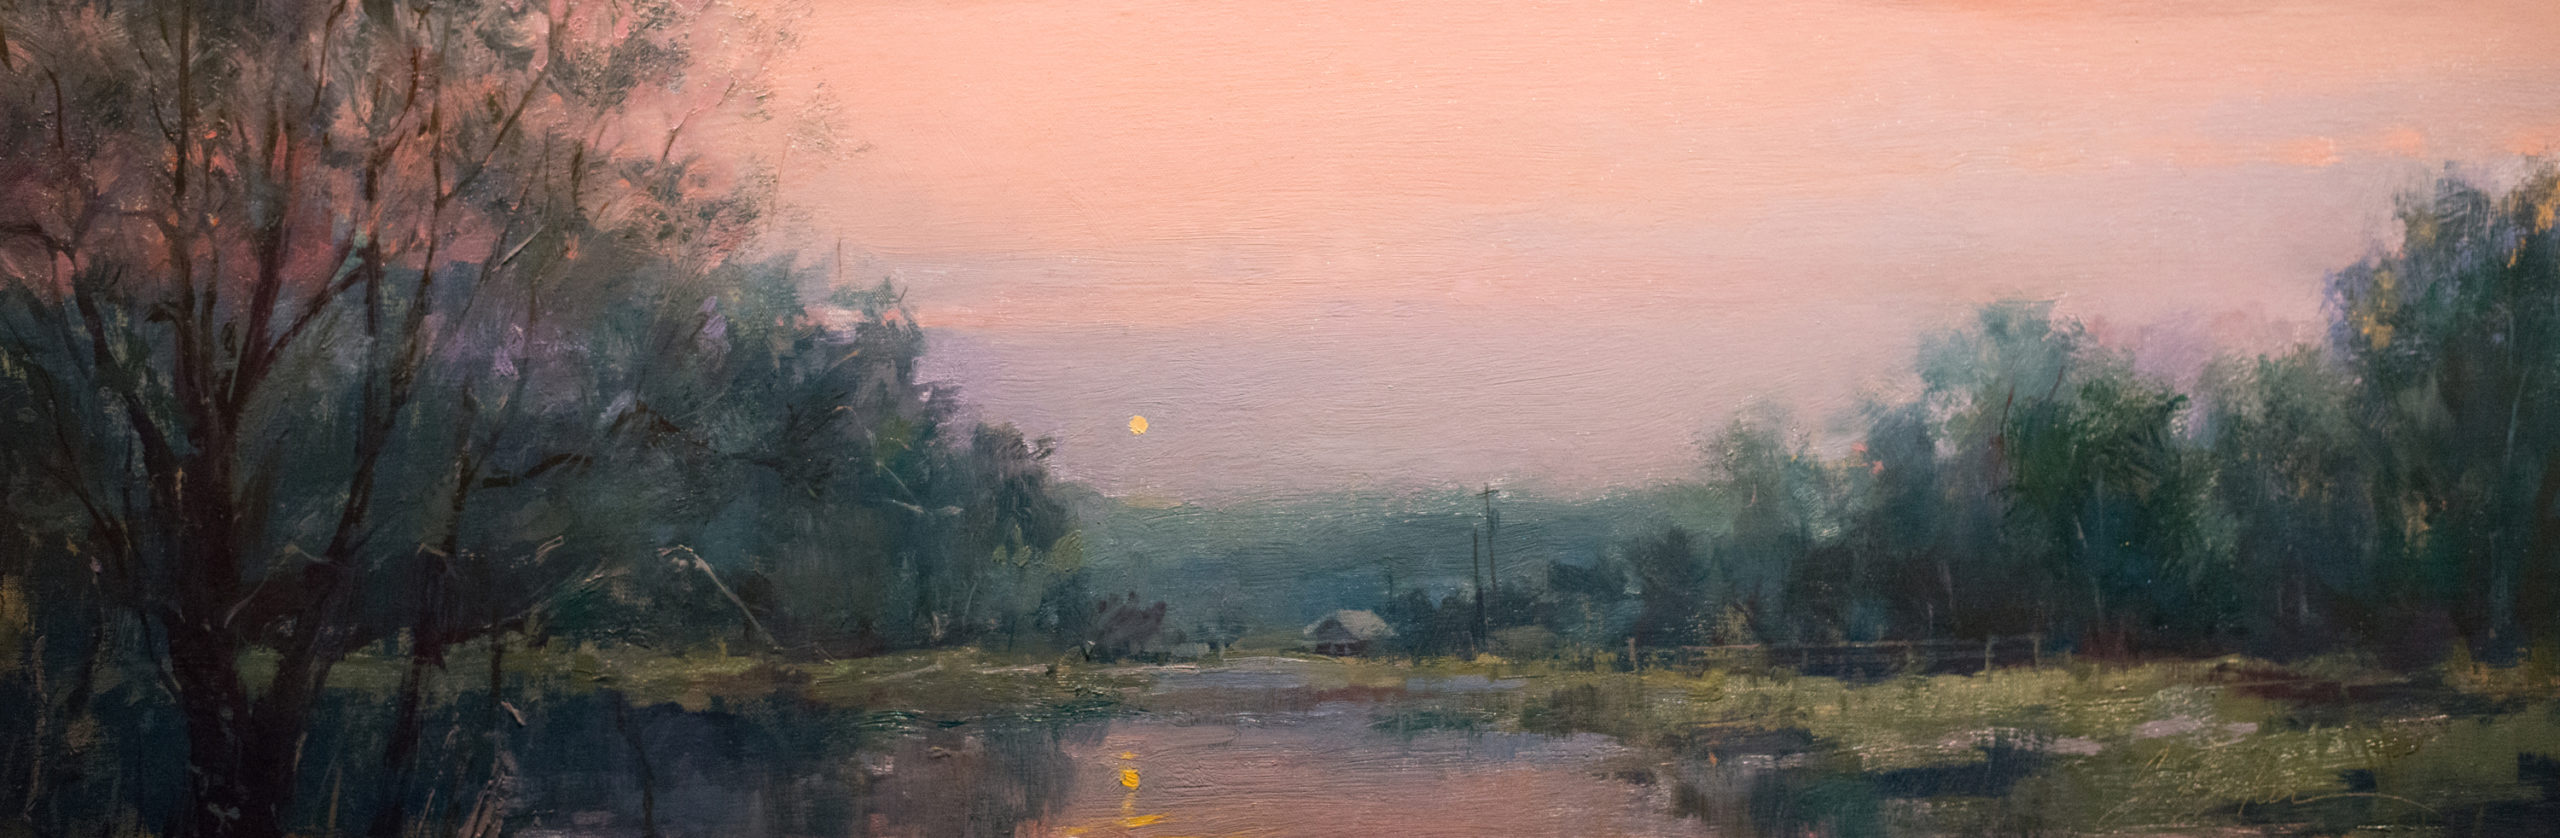 Suzie Baker, "Still Waters," 10 x 30 in., oil on linen panel, 2018